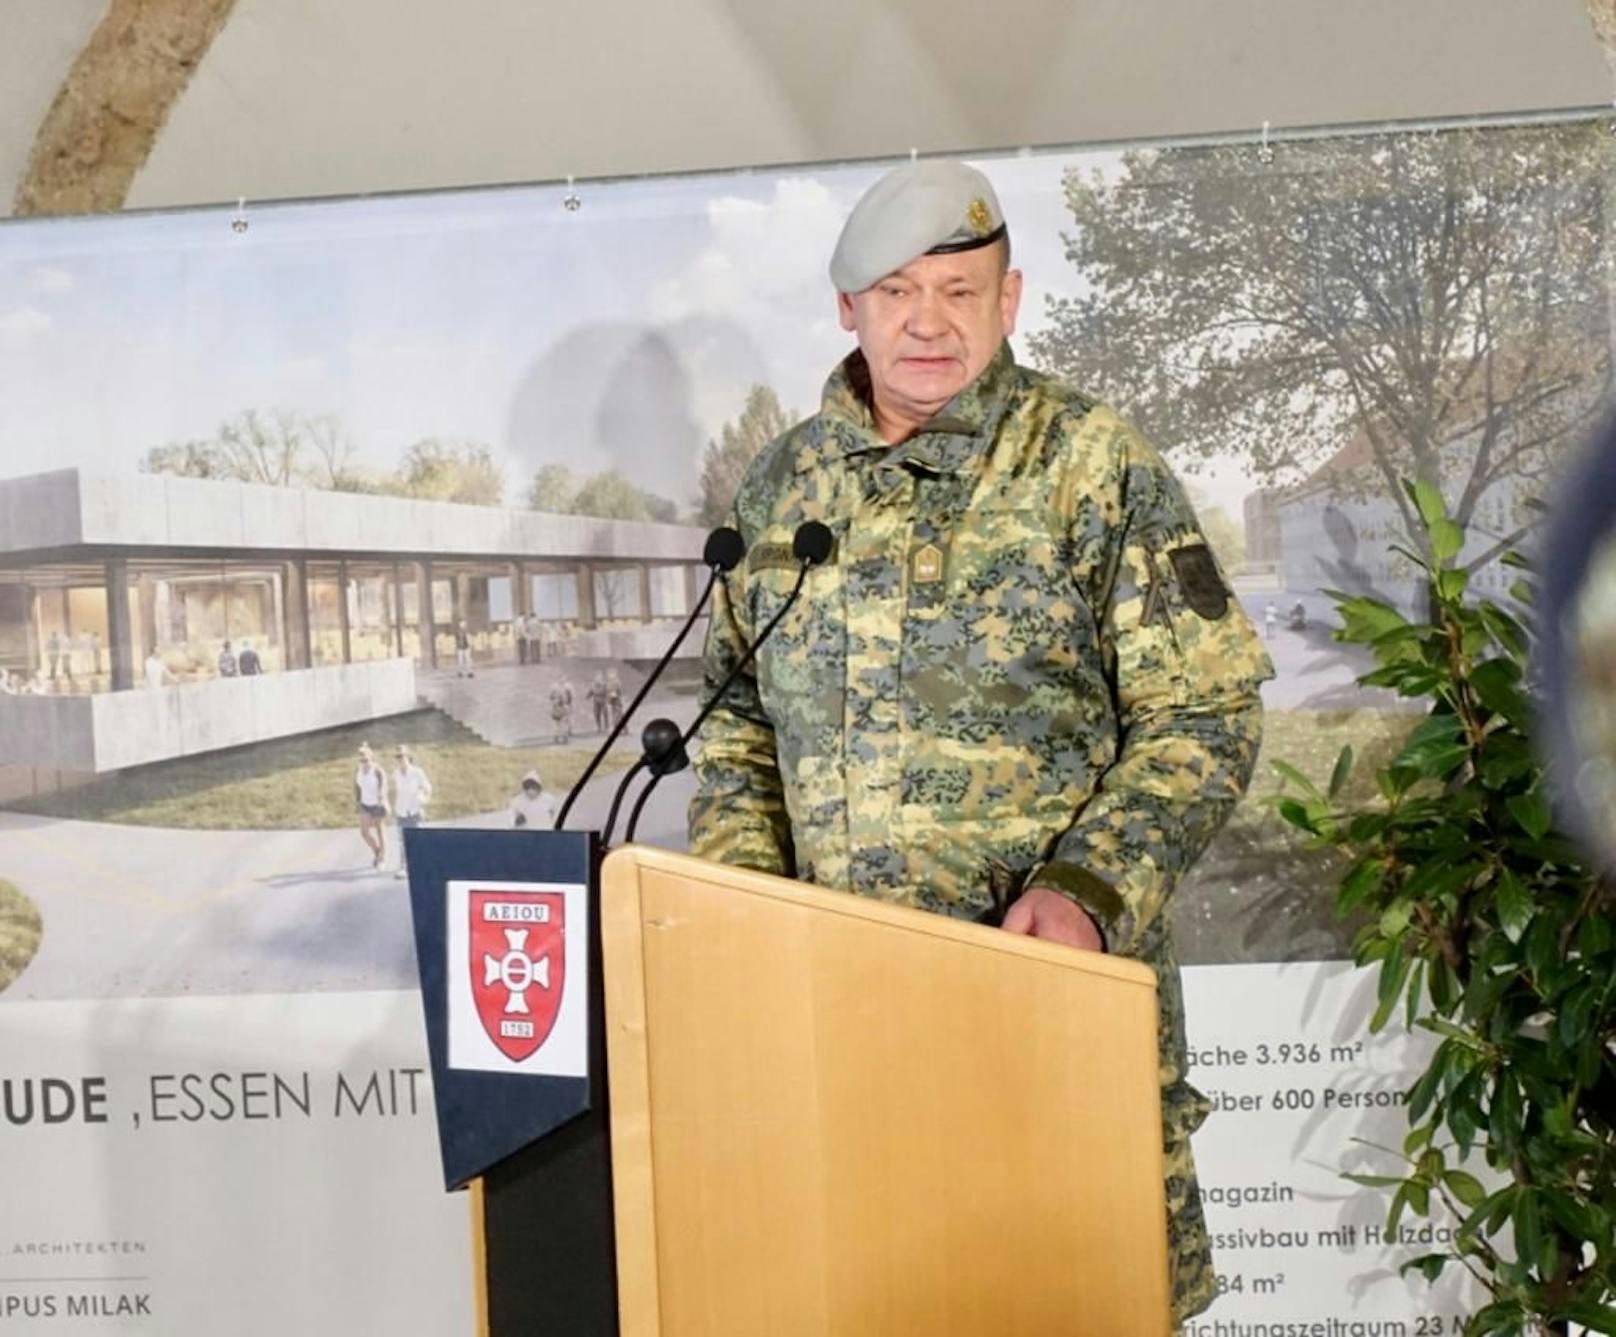 Spatenstich zur Erweiterung der Militärakademie in Wiener Neustadt